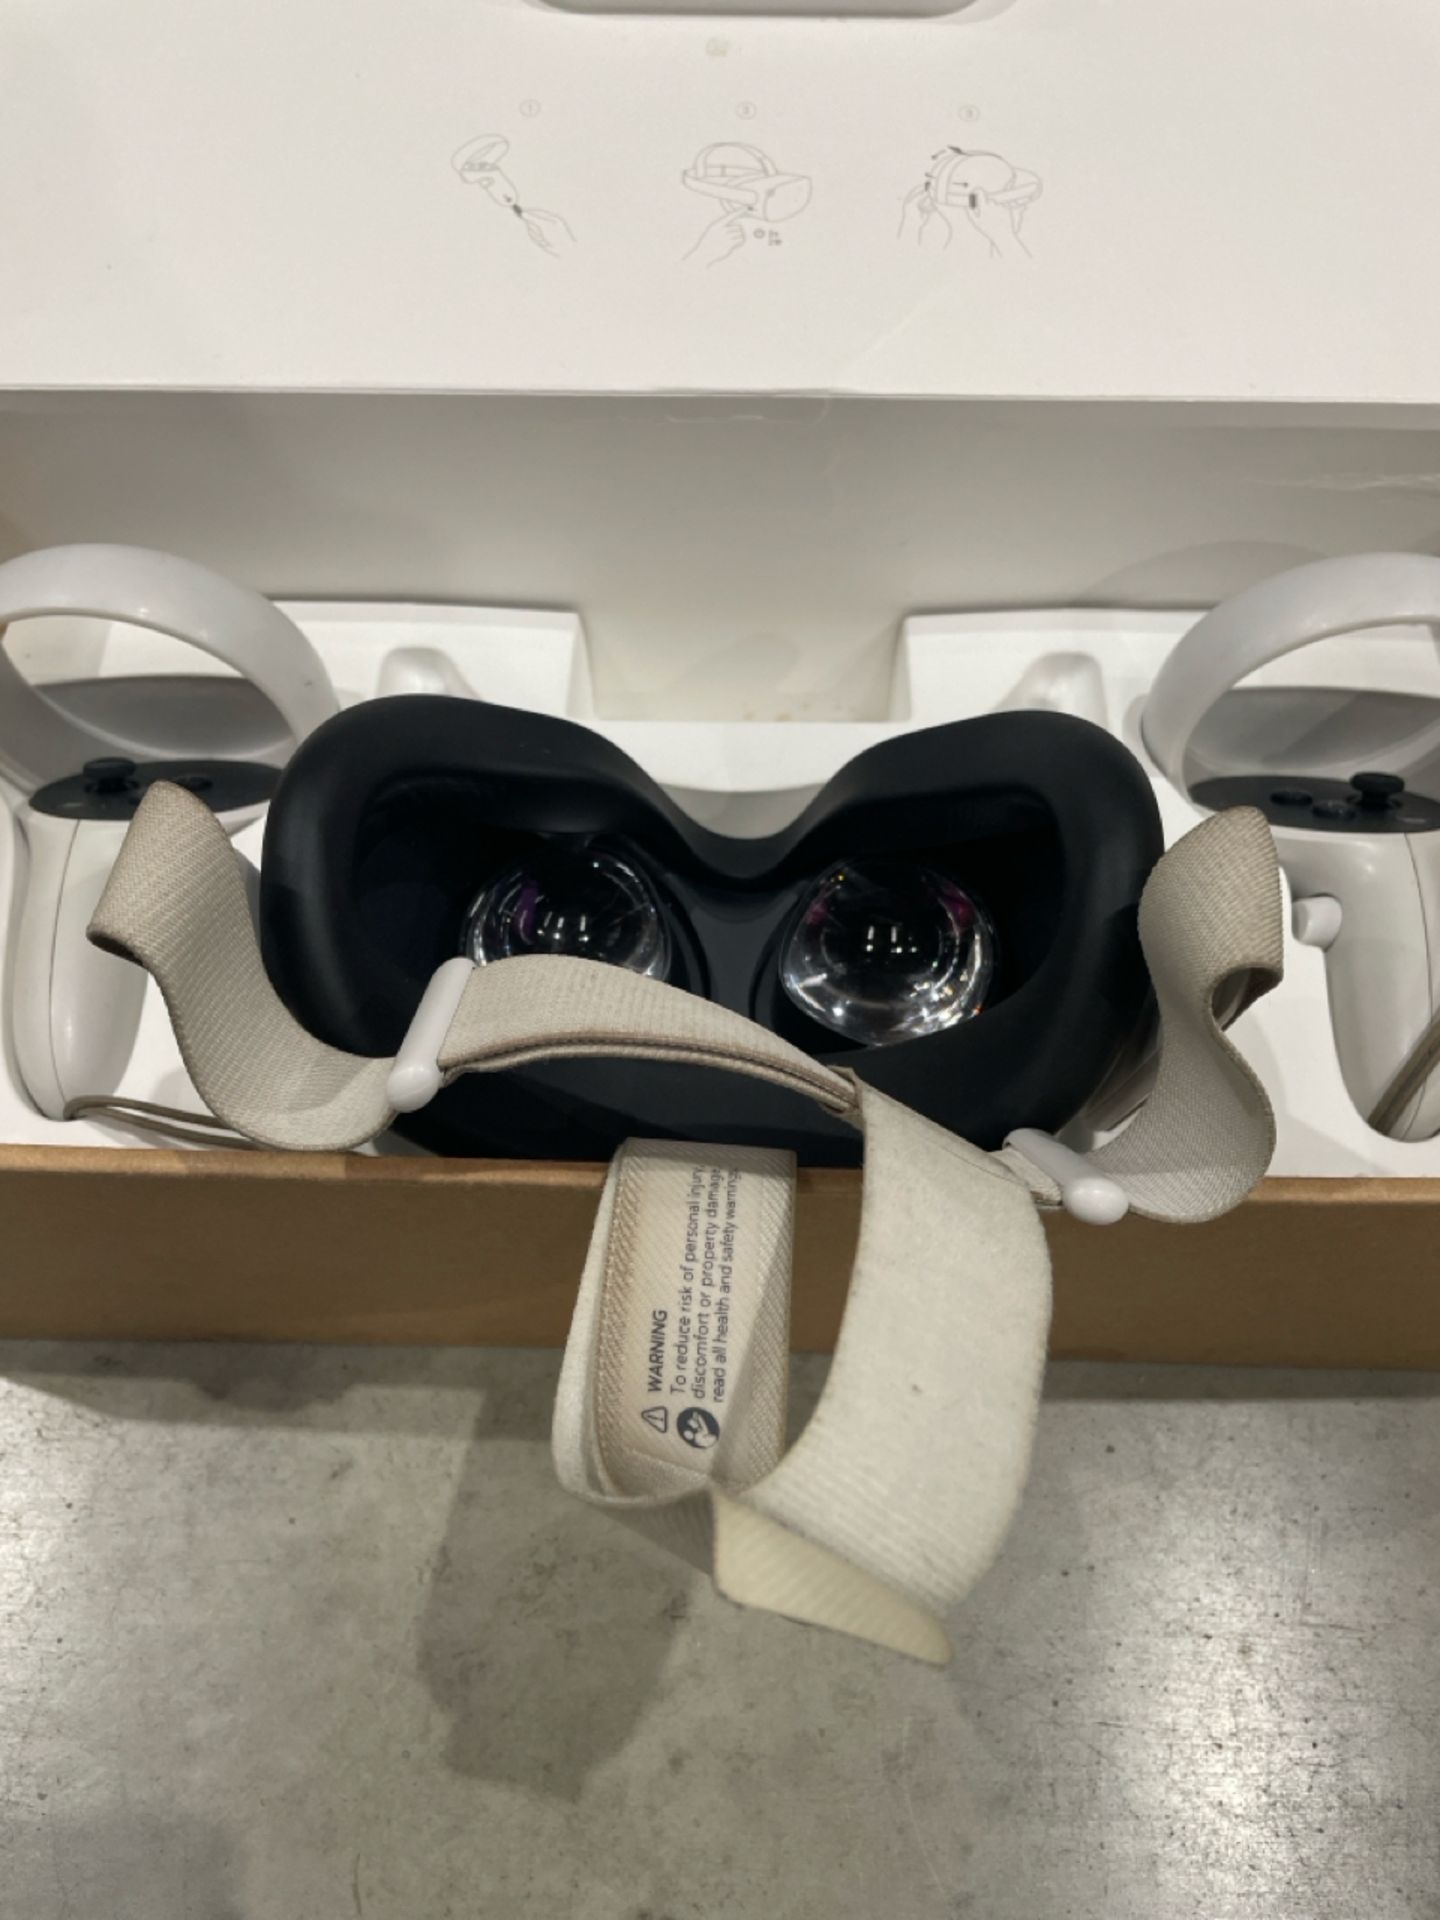 Meta Quest 2 VR Headset - Bild 3 aus 3